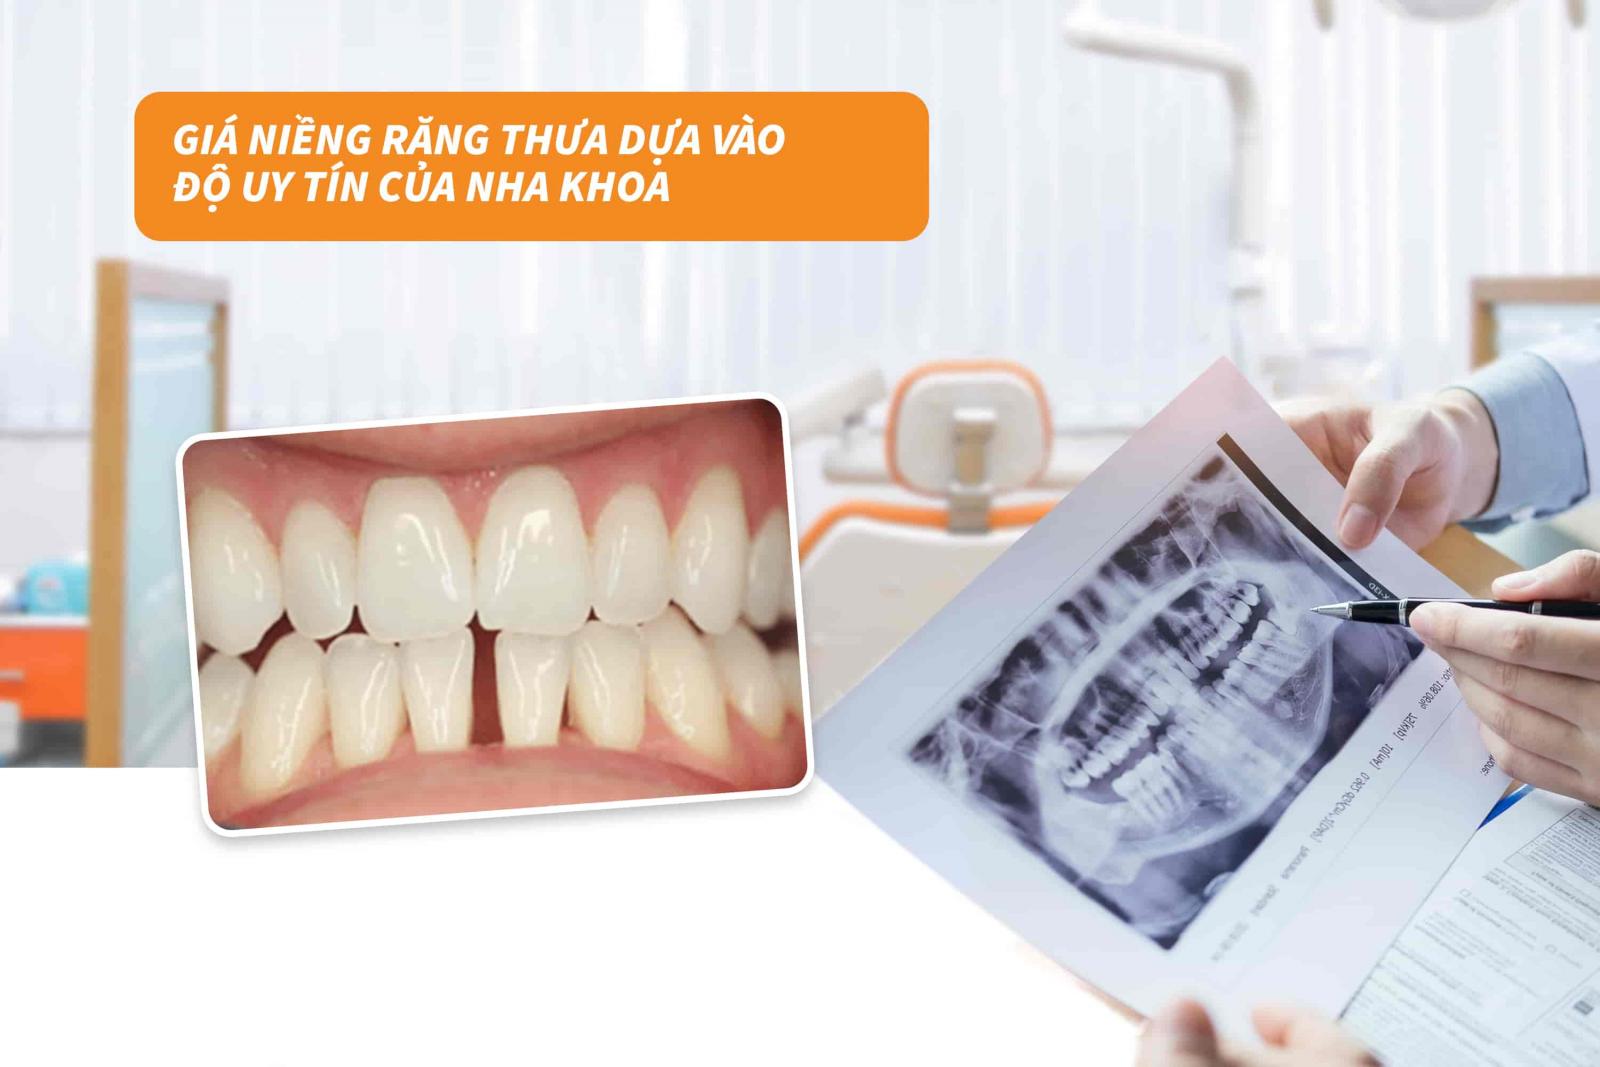 Giá niềng răng dựa vào độ uy tín của nha khoa